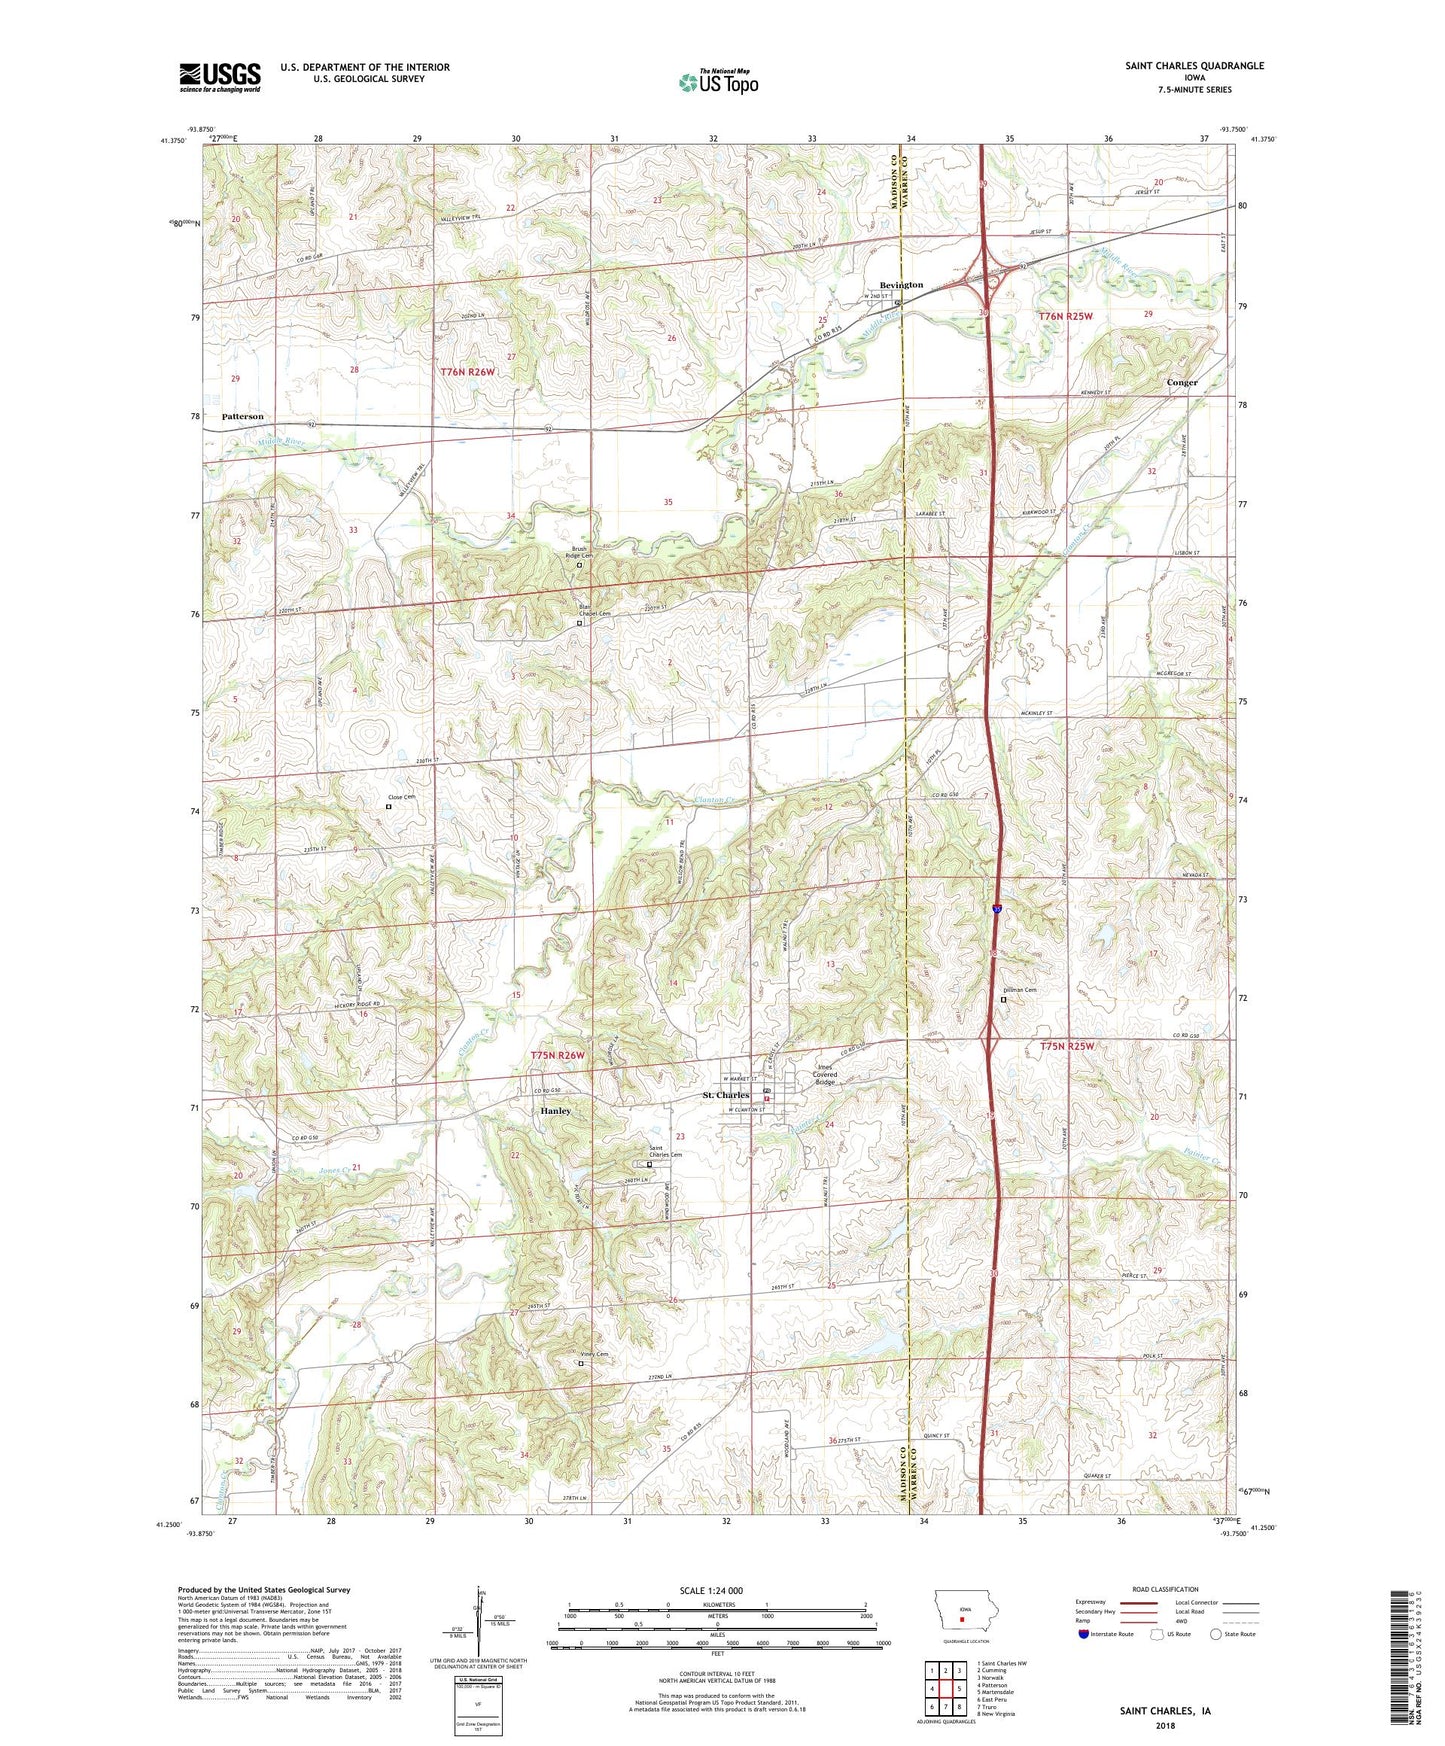 Saint Charles Iowa US Topo Map Image